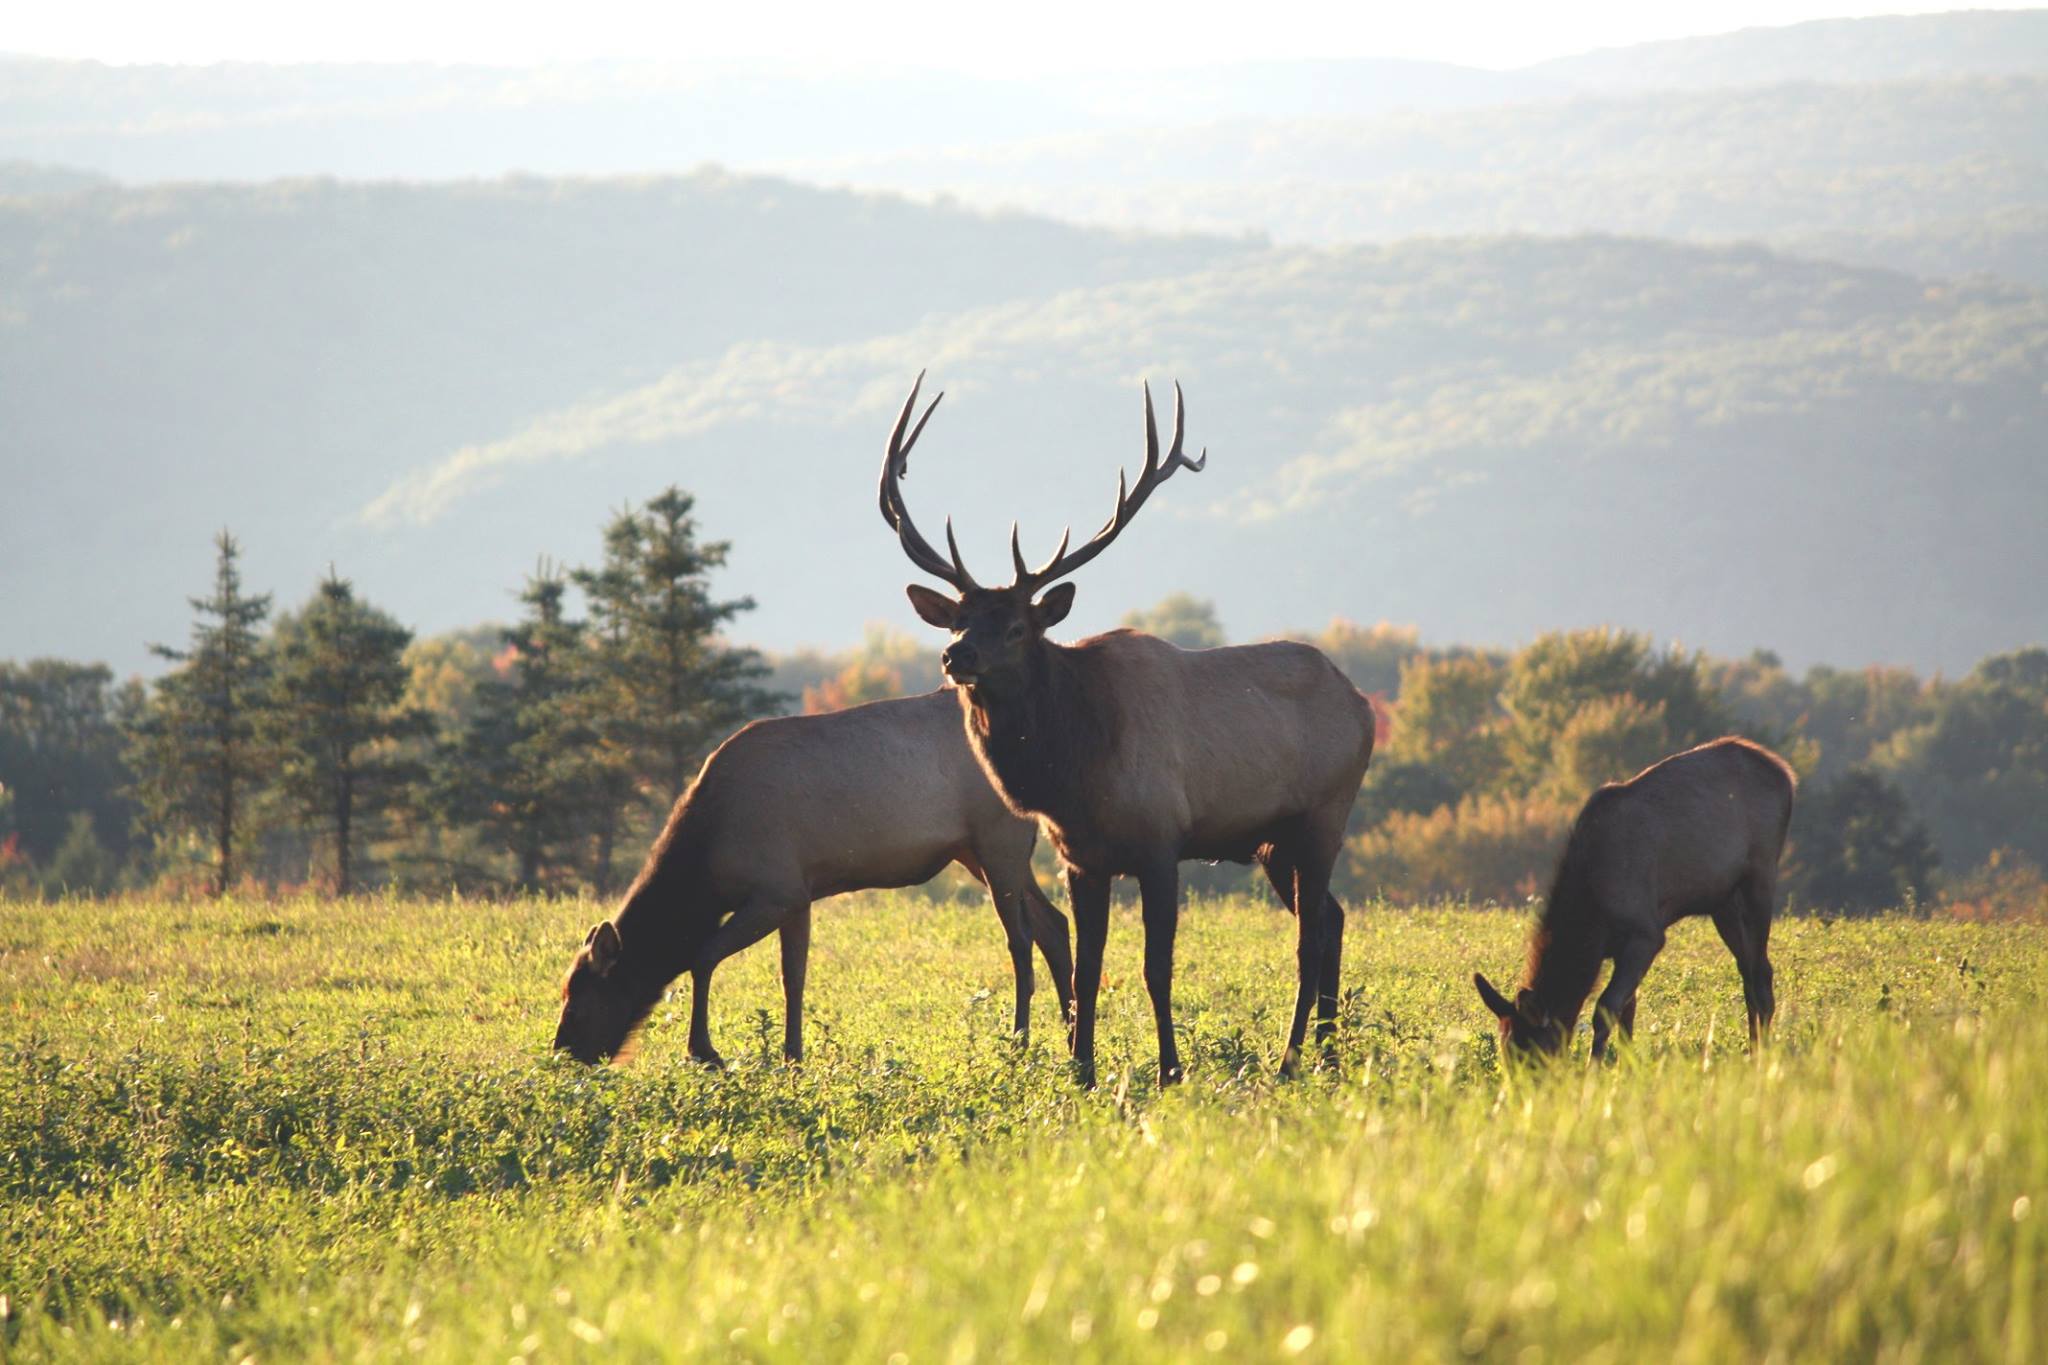 Вапити в какой природной зоне северной америки. Вапити стадо. Elk. Ponssee Elk. Elk-001 турецкий.